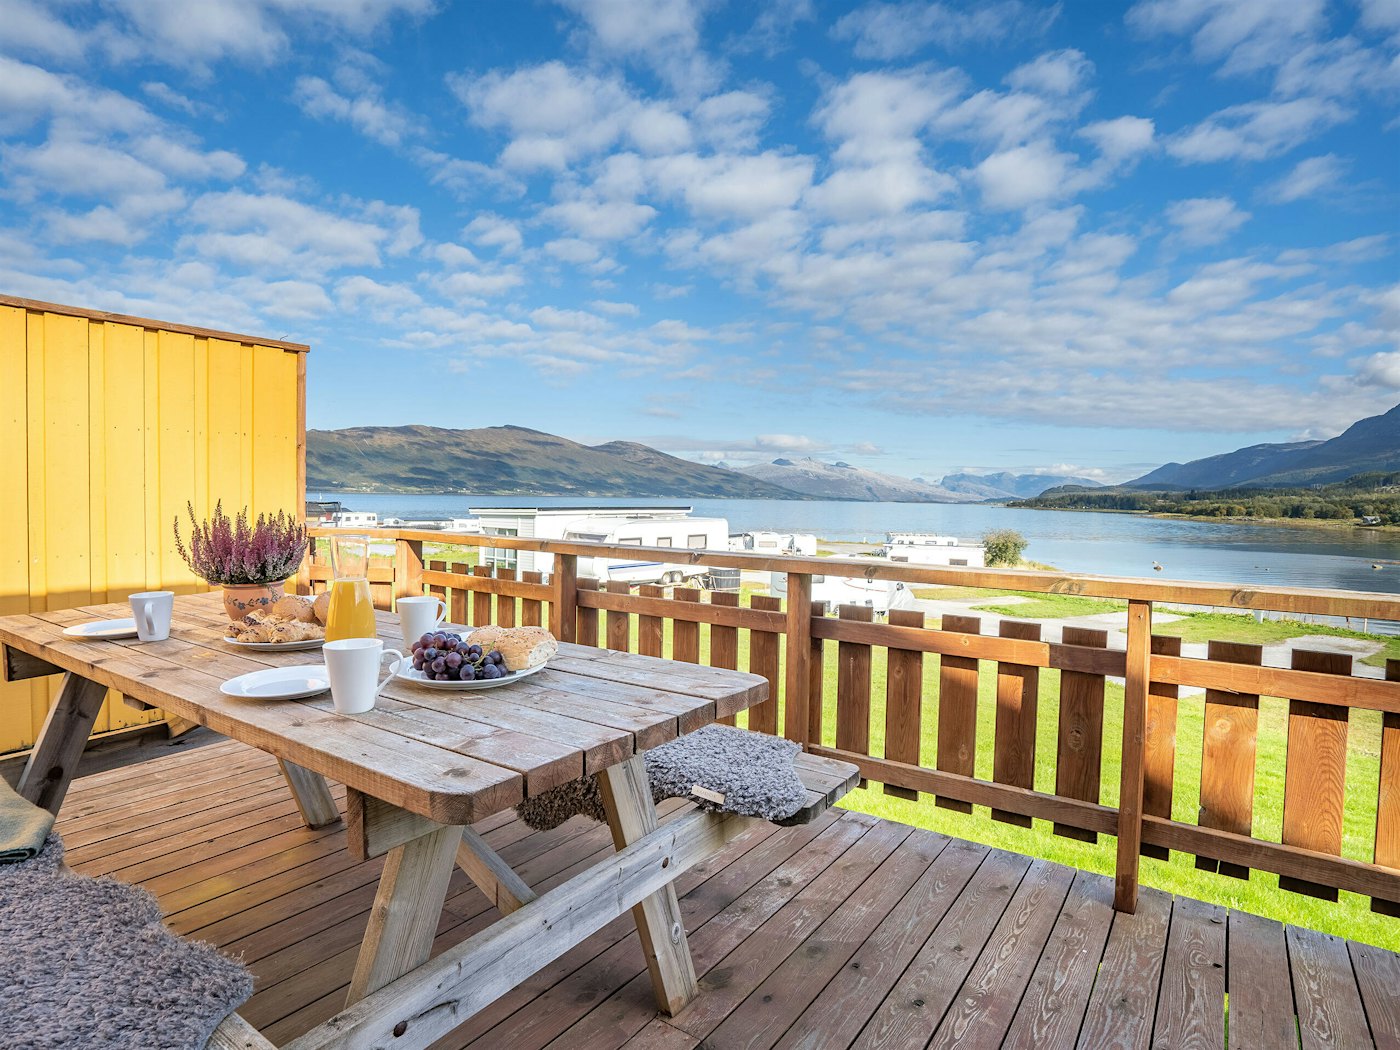 Terrasse mit gedecktem Frühstückstisch. Schönes Wetter und Blick auf das Meer und die Berge. Foto